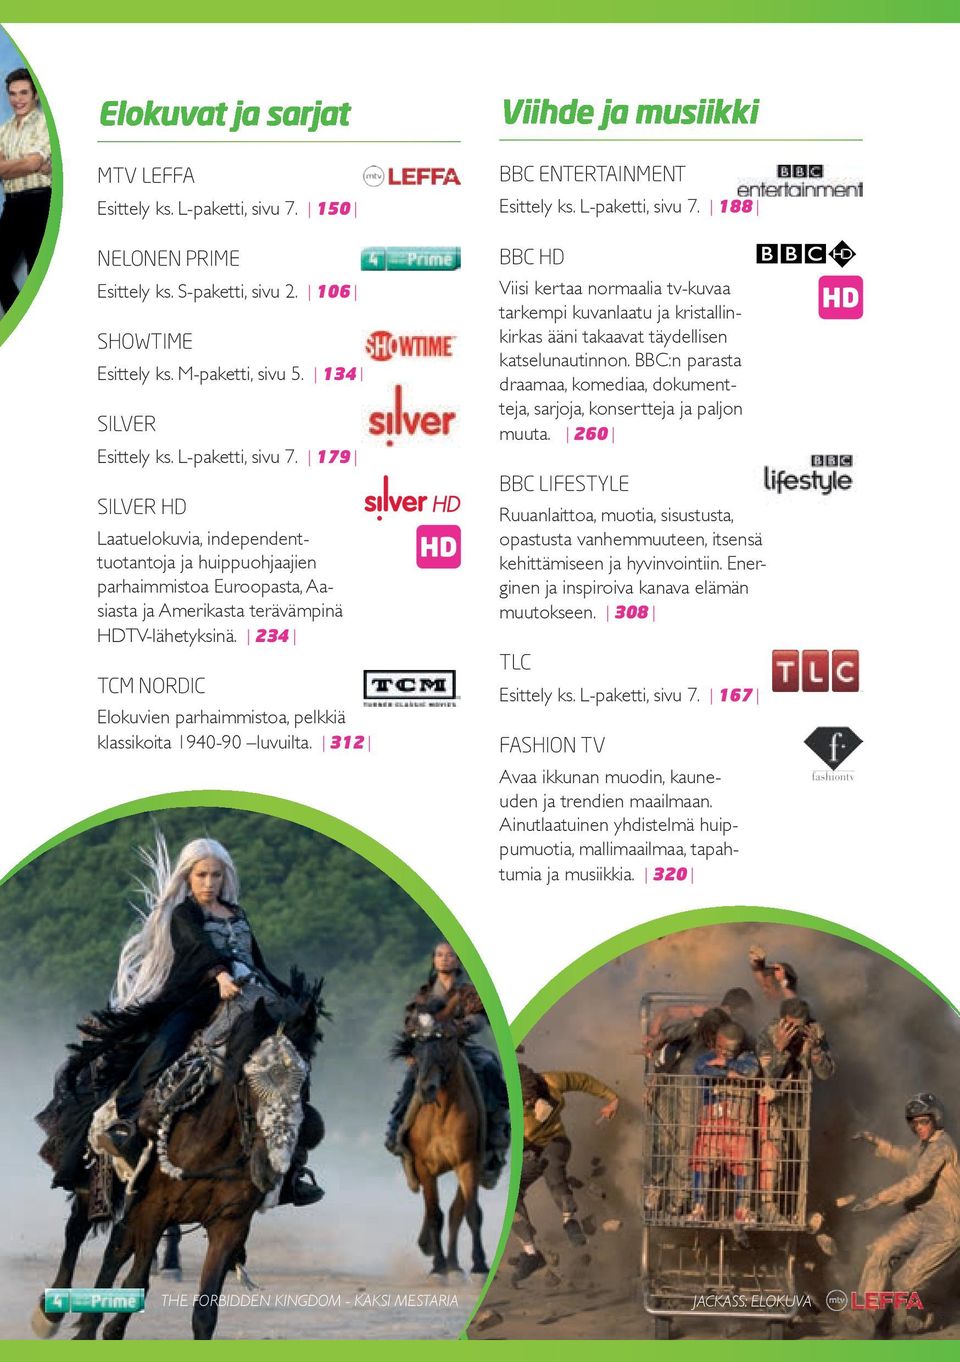 179 SilVER HD Laatuelokuvia, independenttuotantoja ja huippuohjaajien parhaimmistoa Euroopasta, Aasiasta ja Amerikasta terävämpinä HDTV-lähetyksinä.